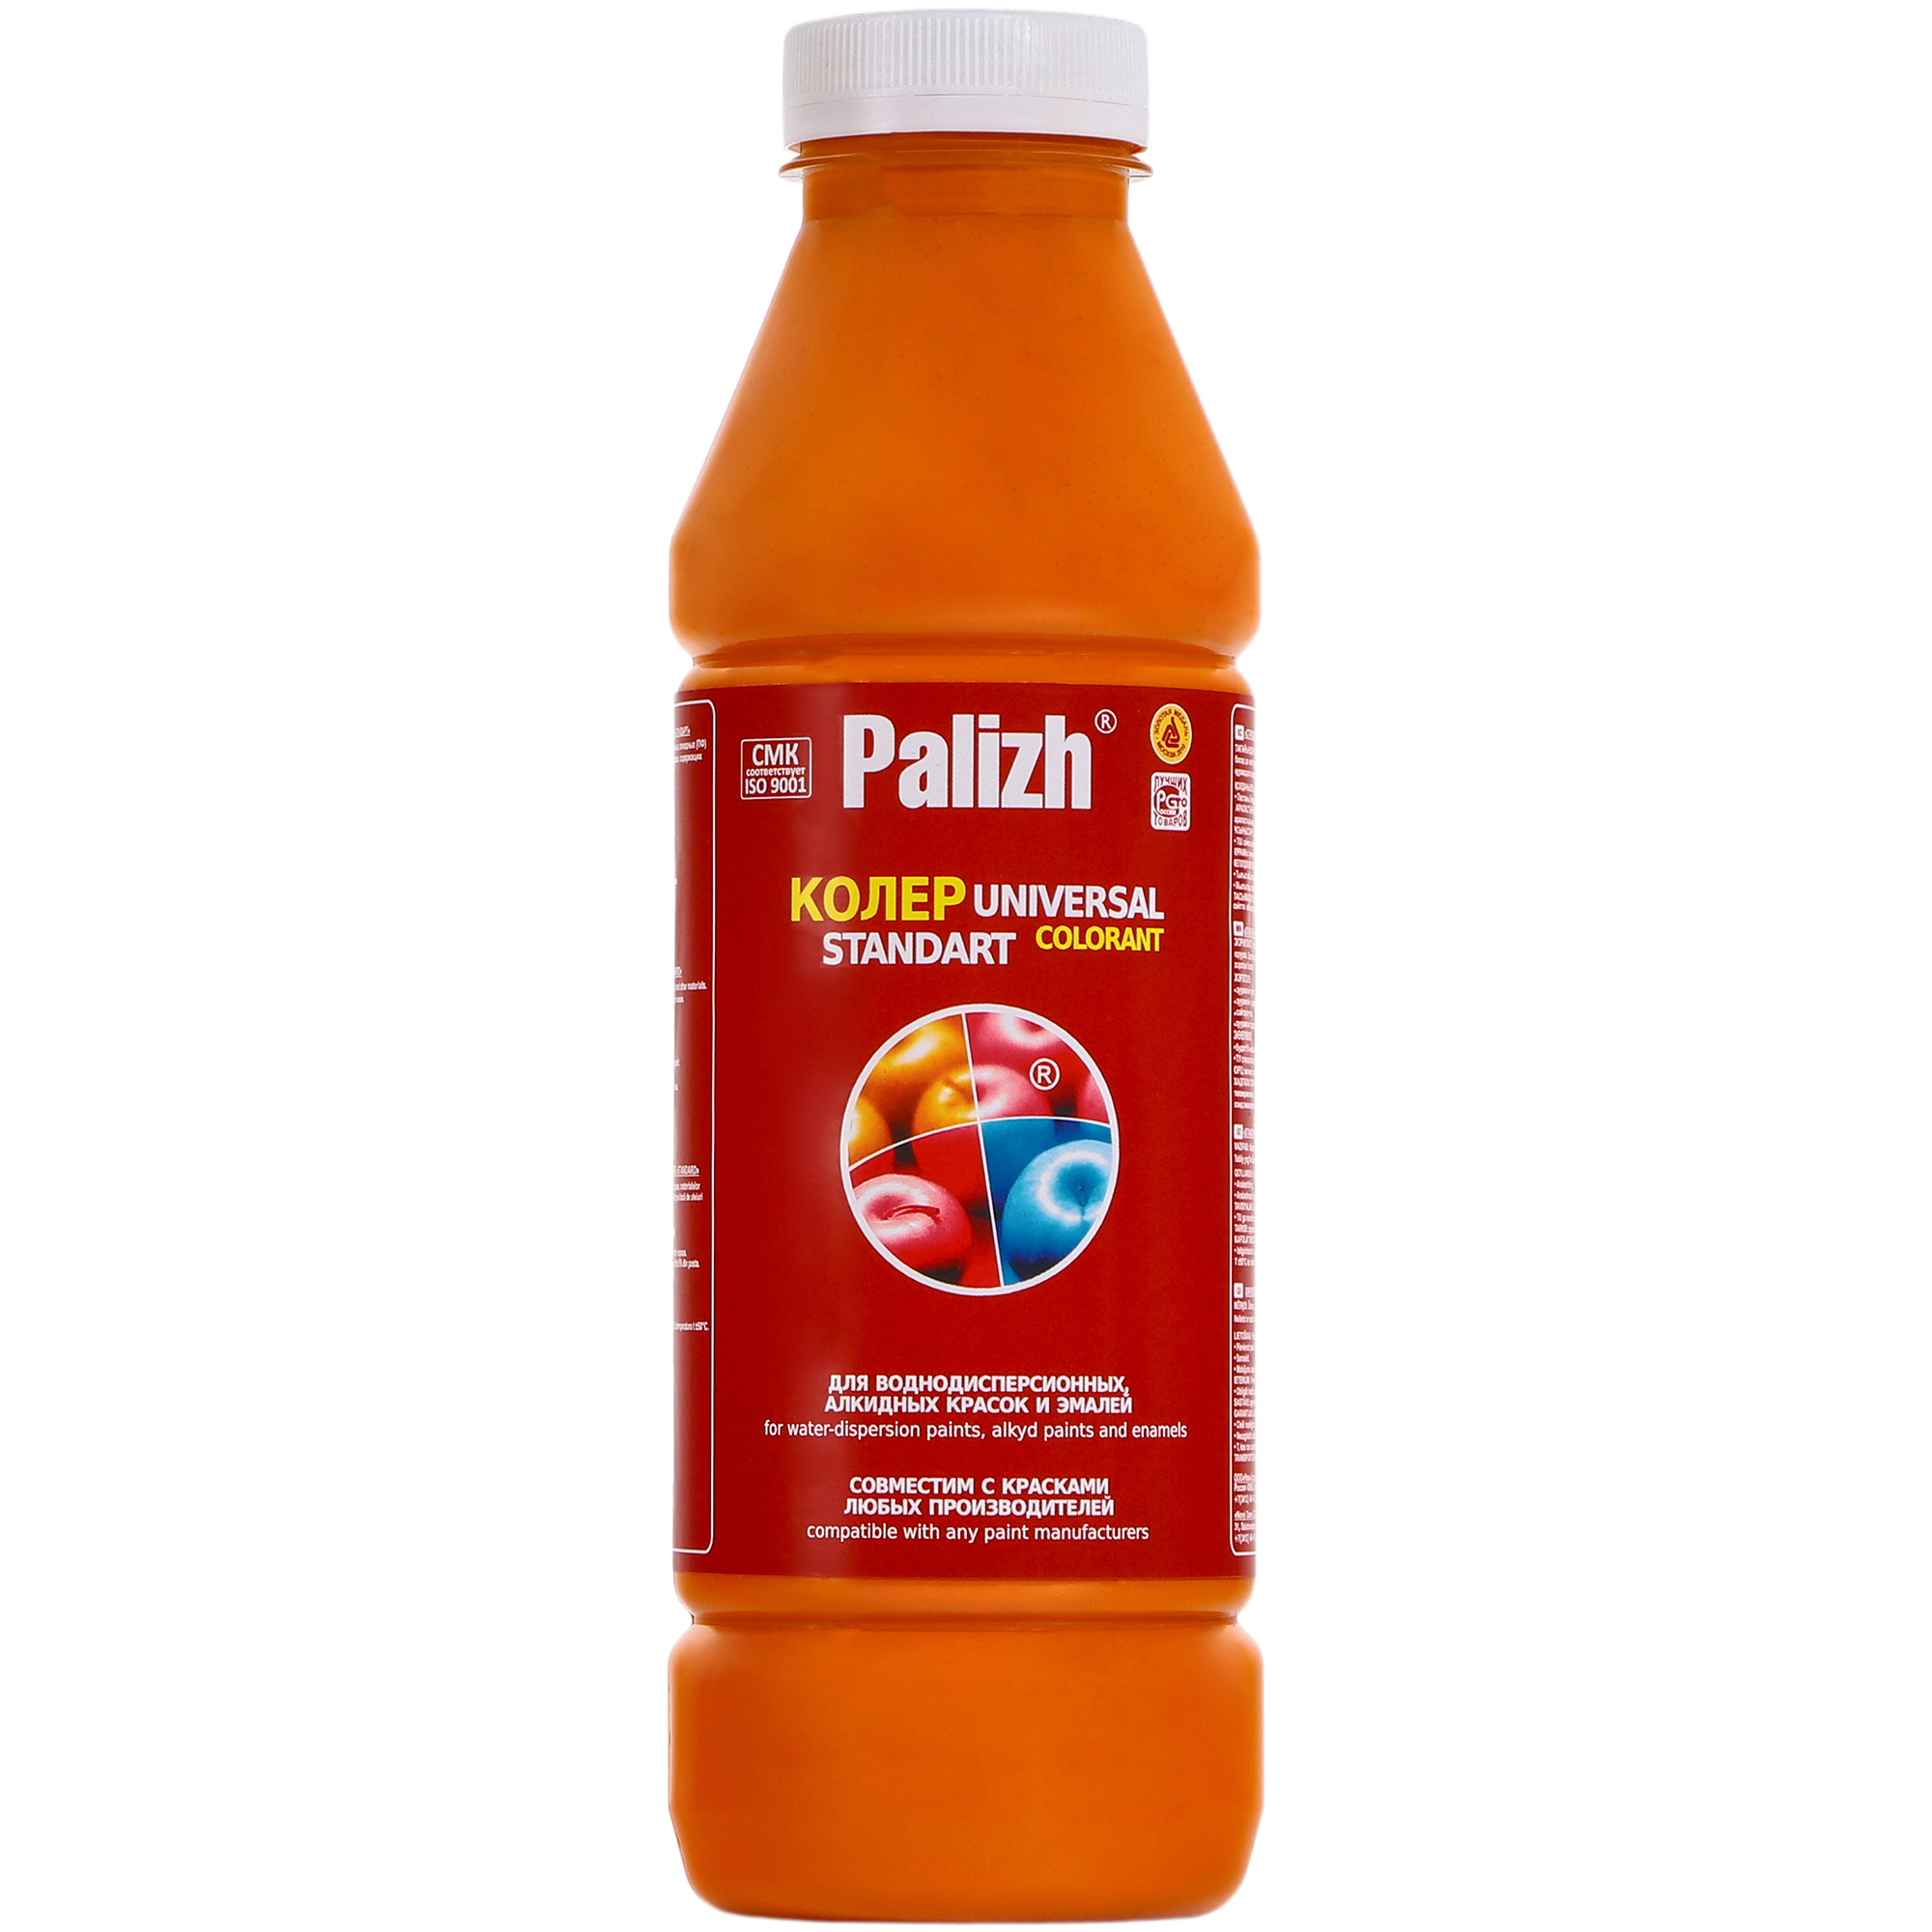 Паста универсальная колеровочная Palizh апельсин - 900 мл паста универсальная колеровочная palizh палевый 900 мл